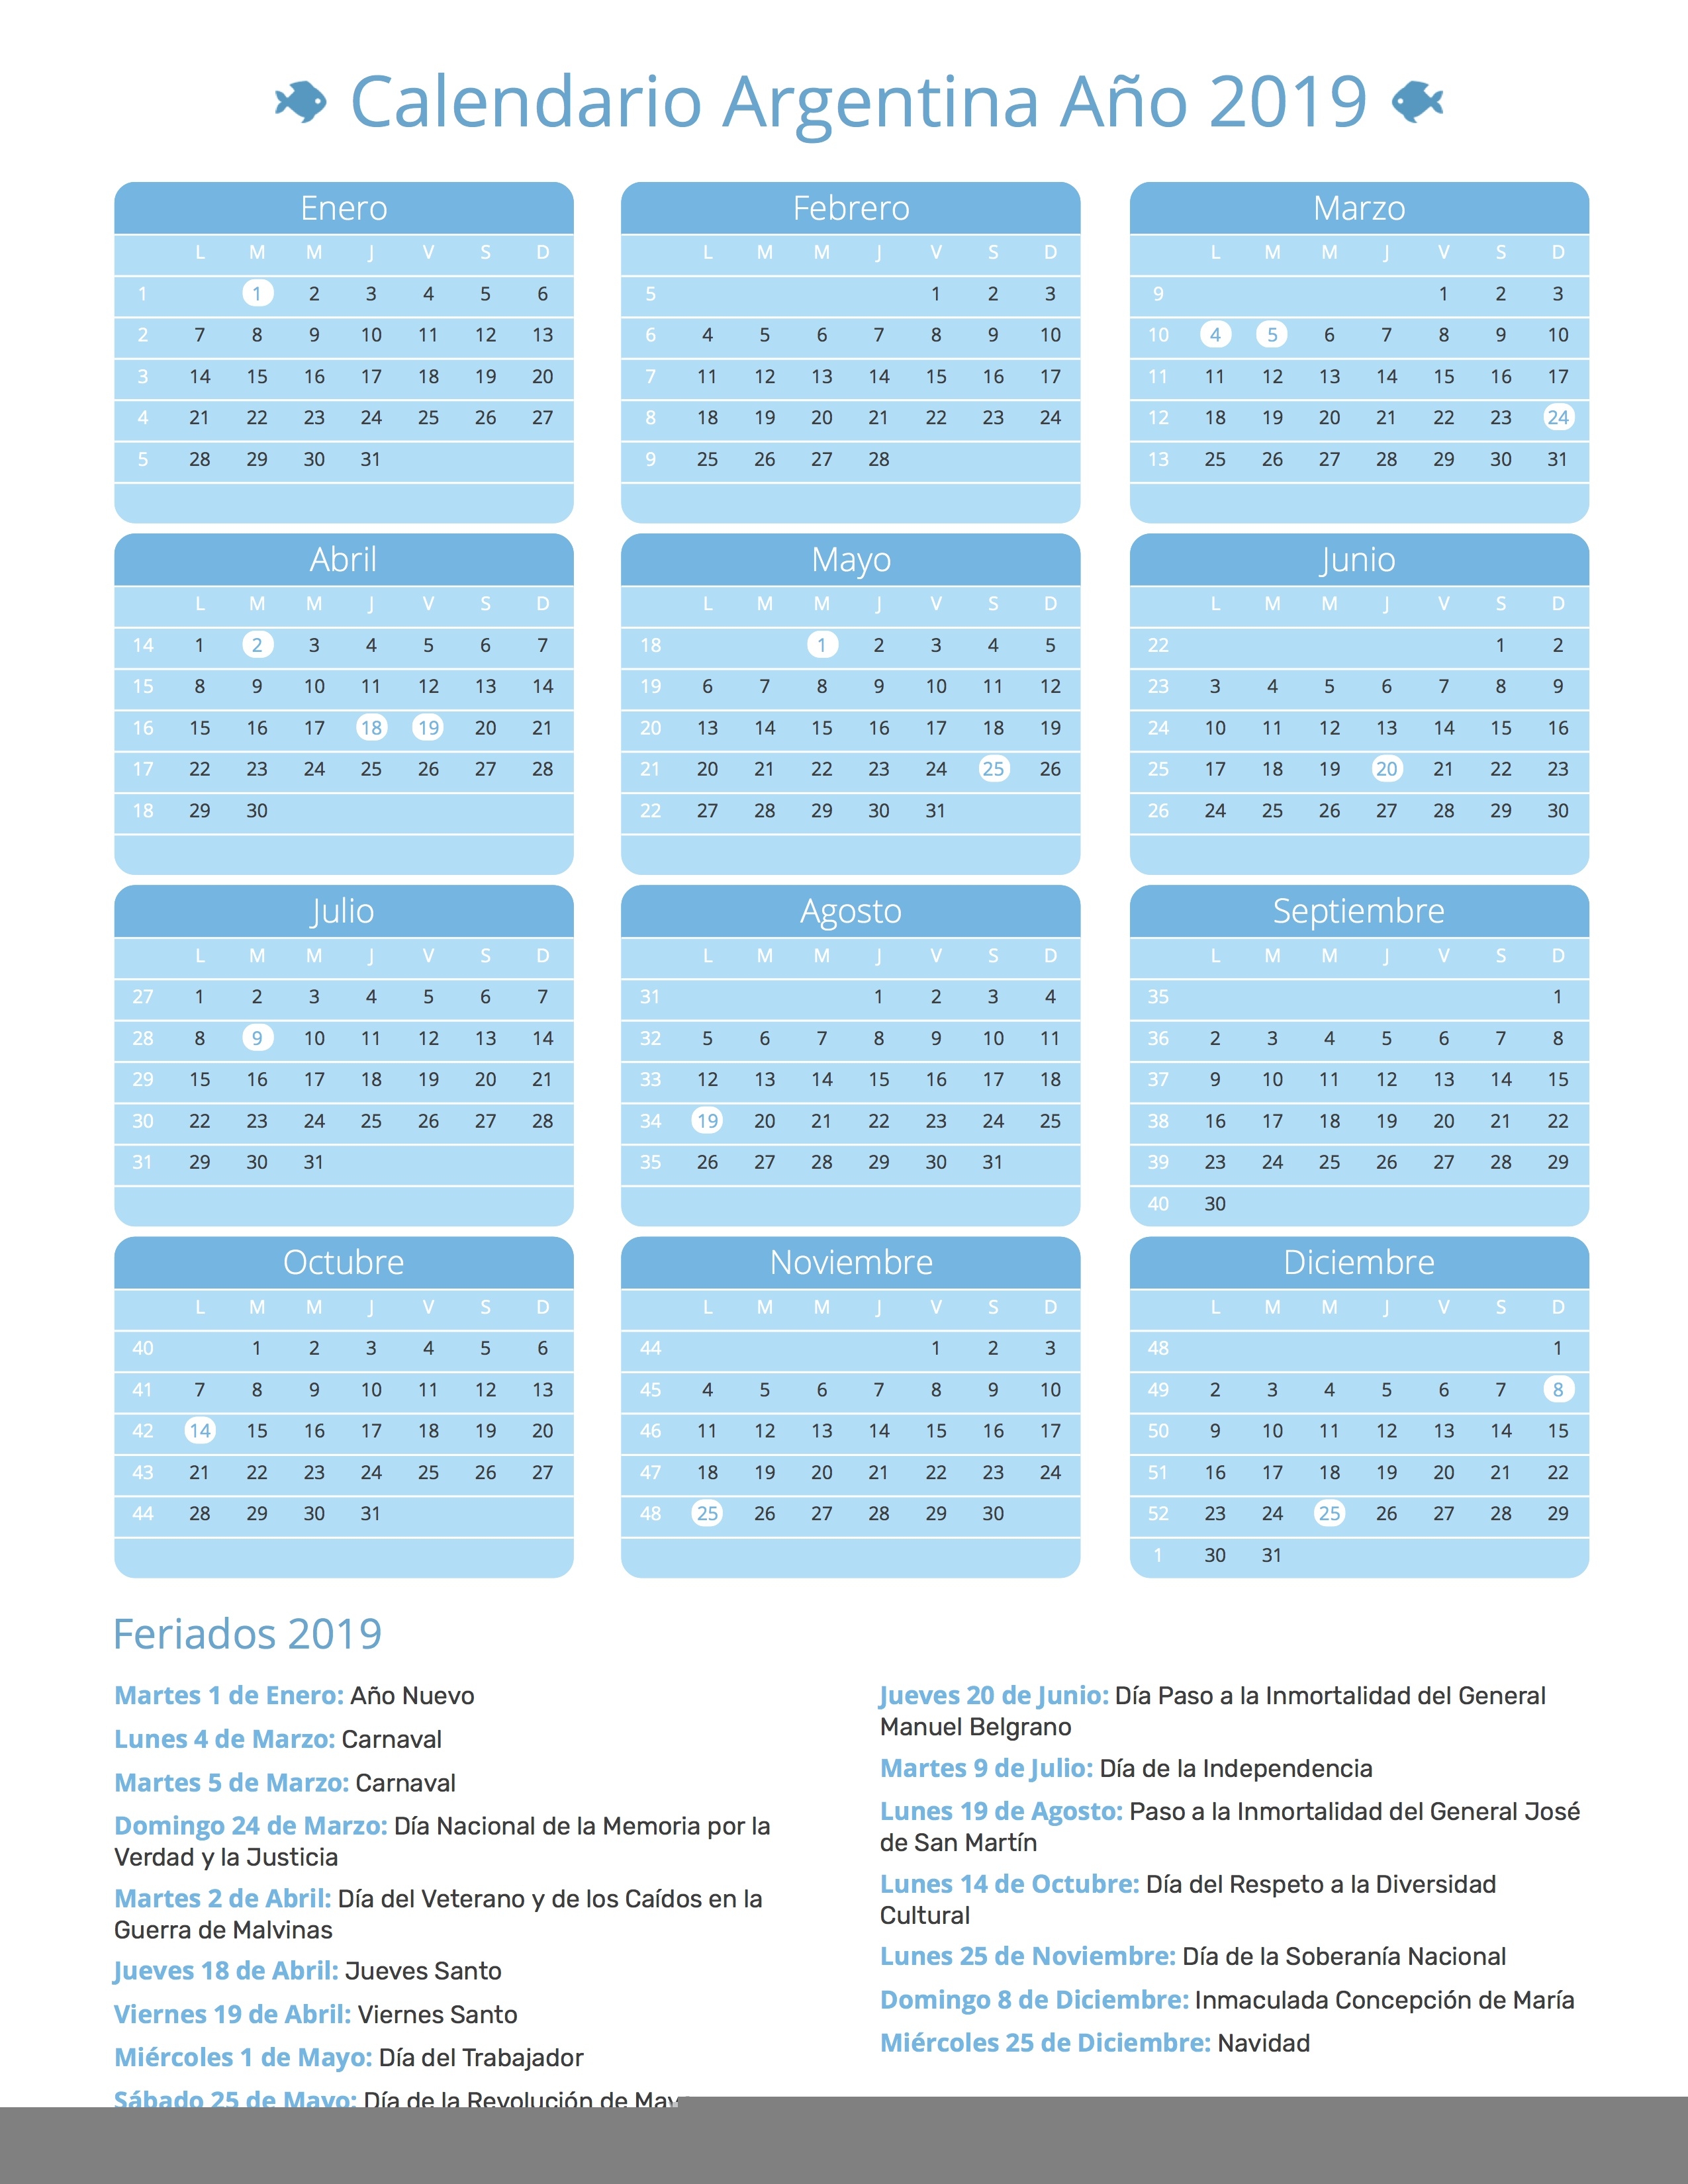 Calendario Argentina Ao 2019 Feriados